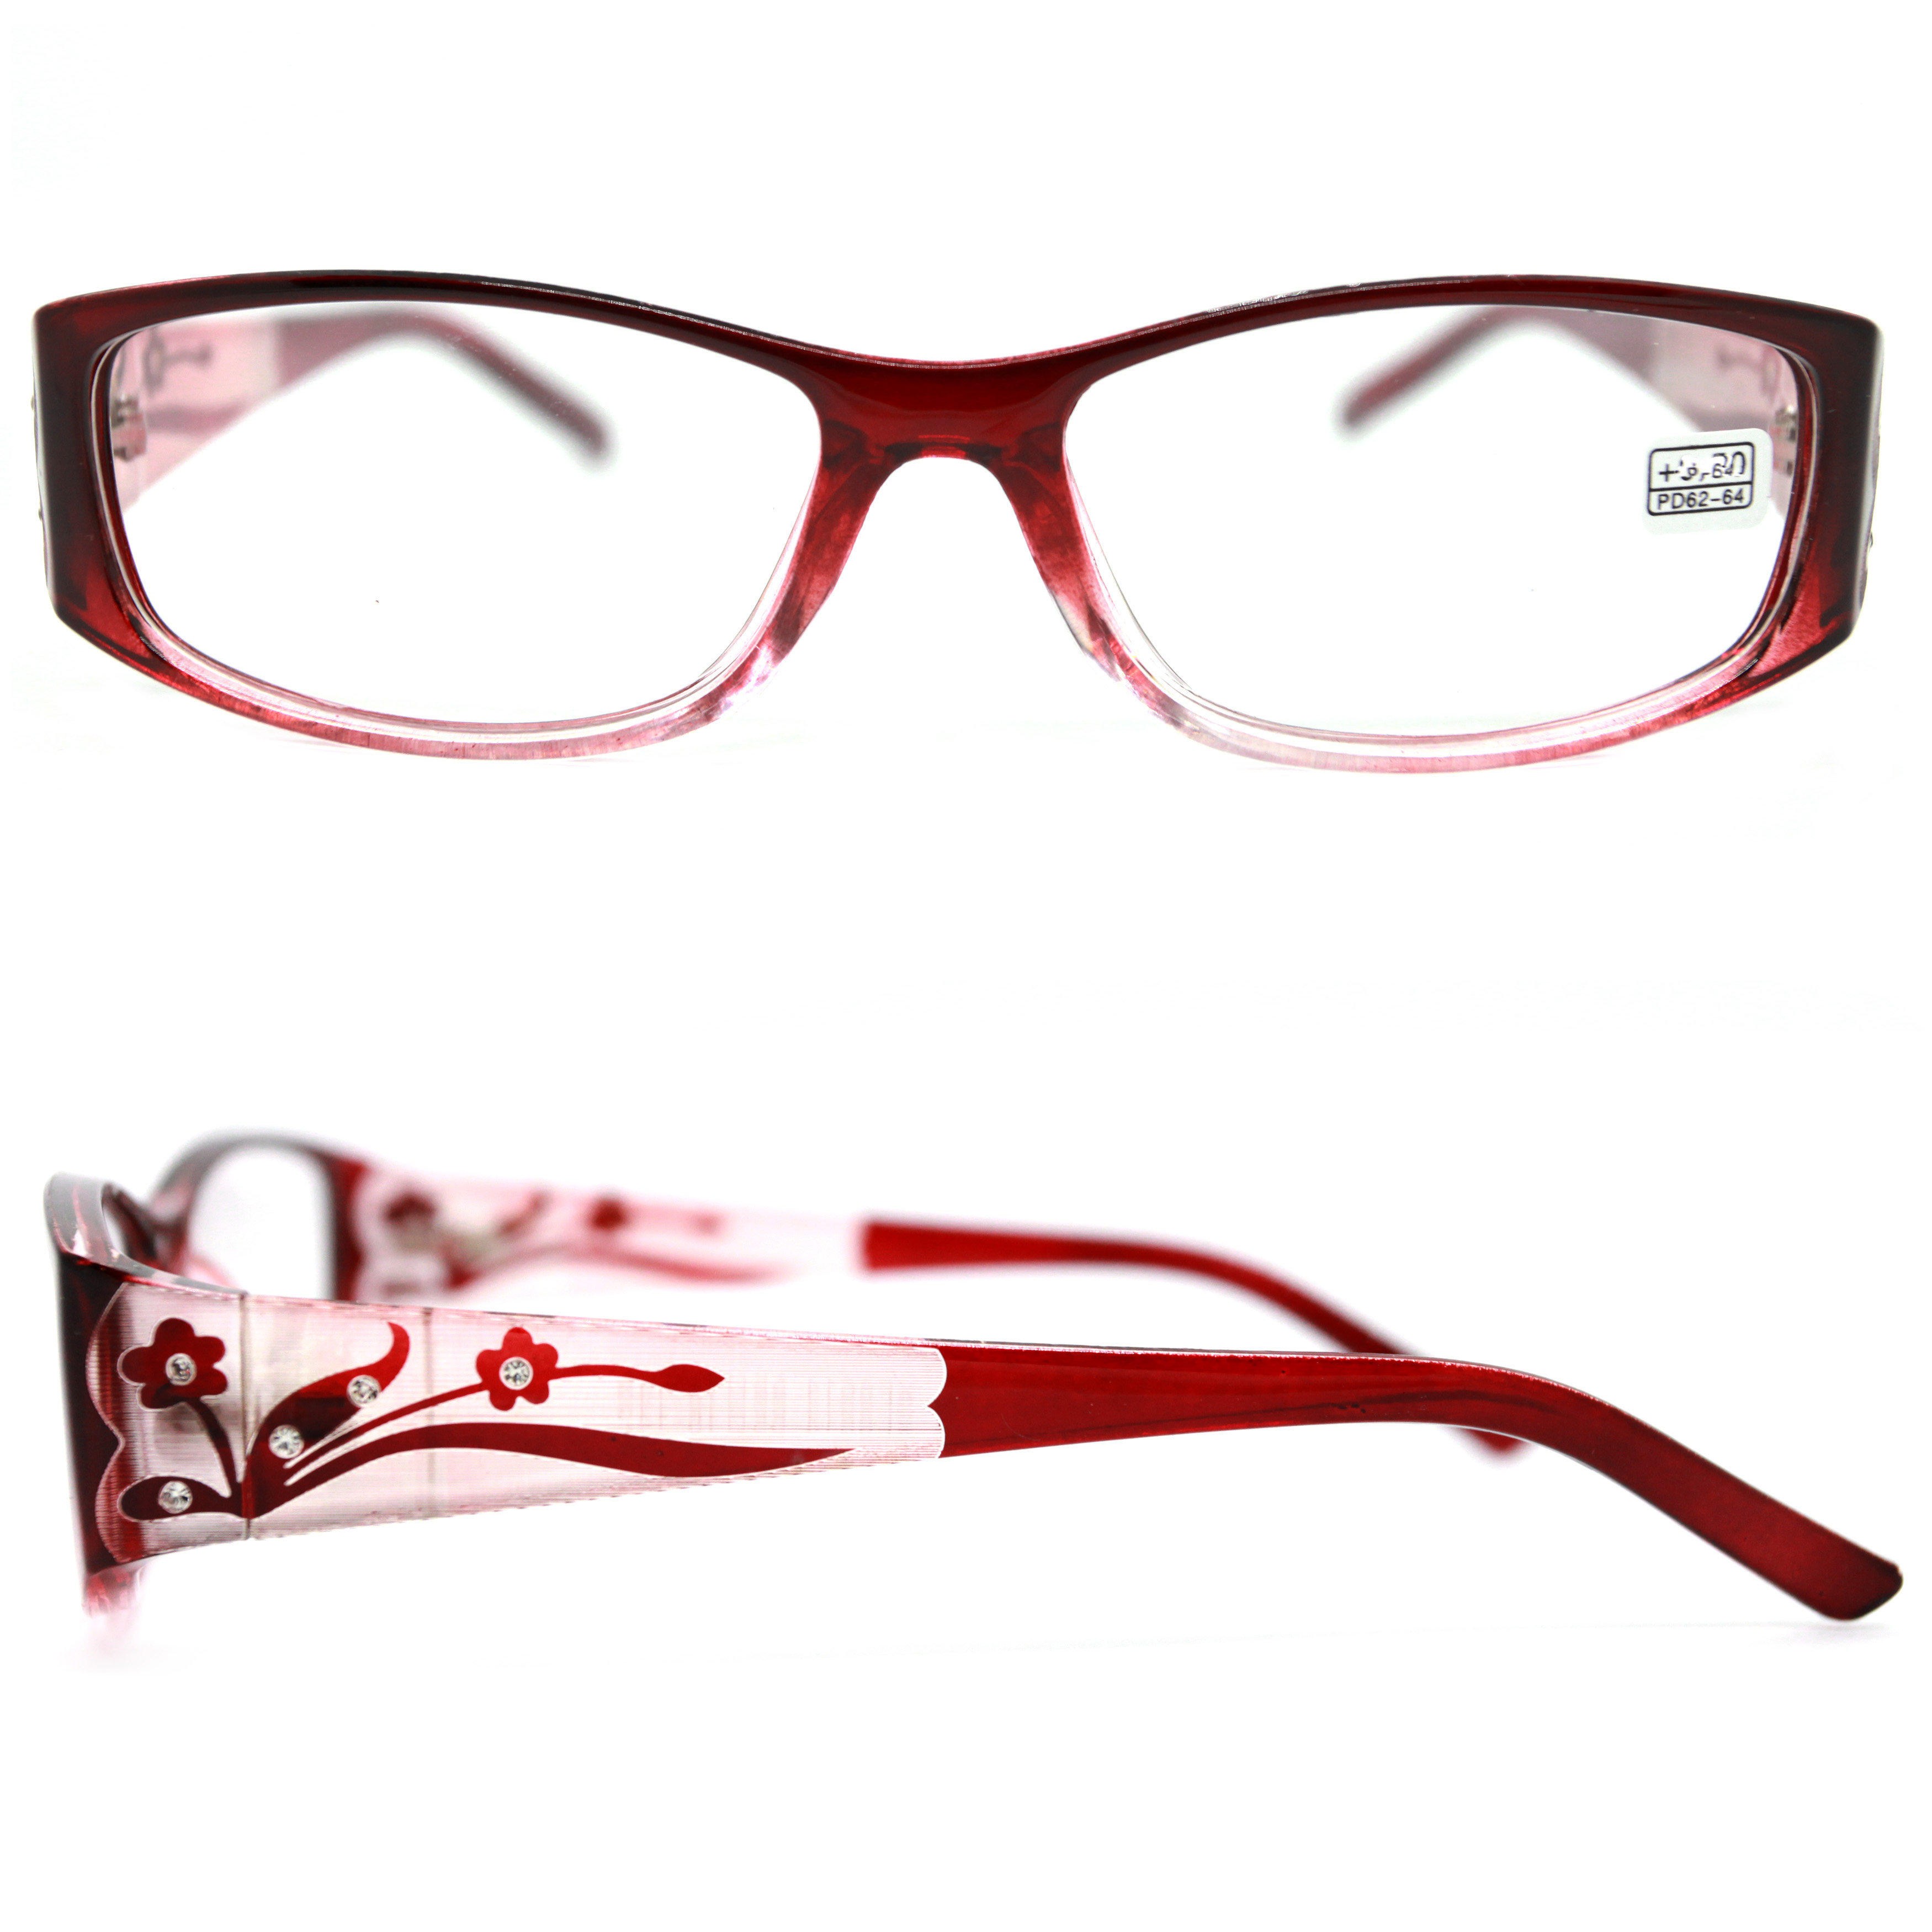 Готовые очки ВОСТОК 6614 +0,50, для чтения, бордовый, РЦ 62-64